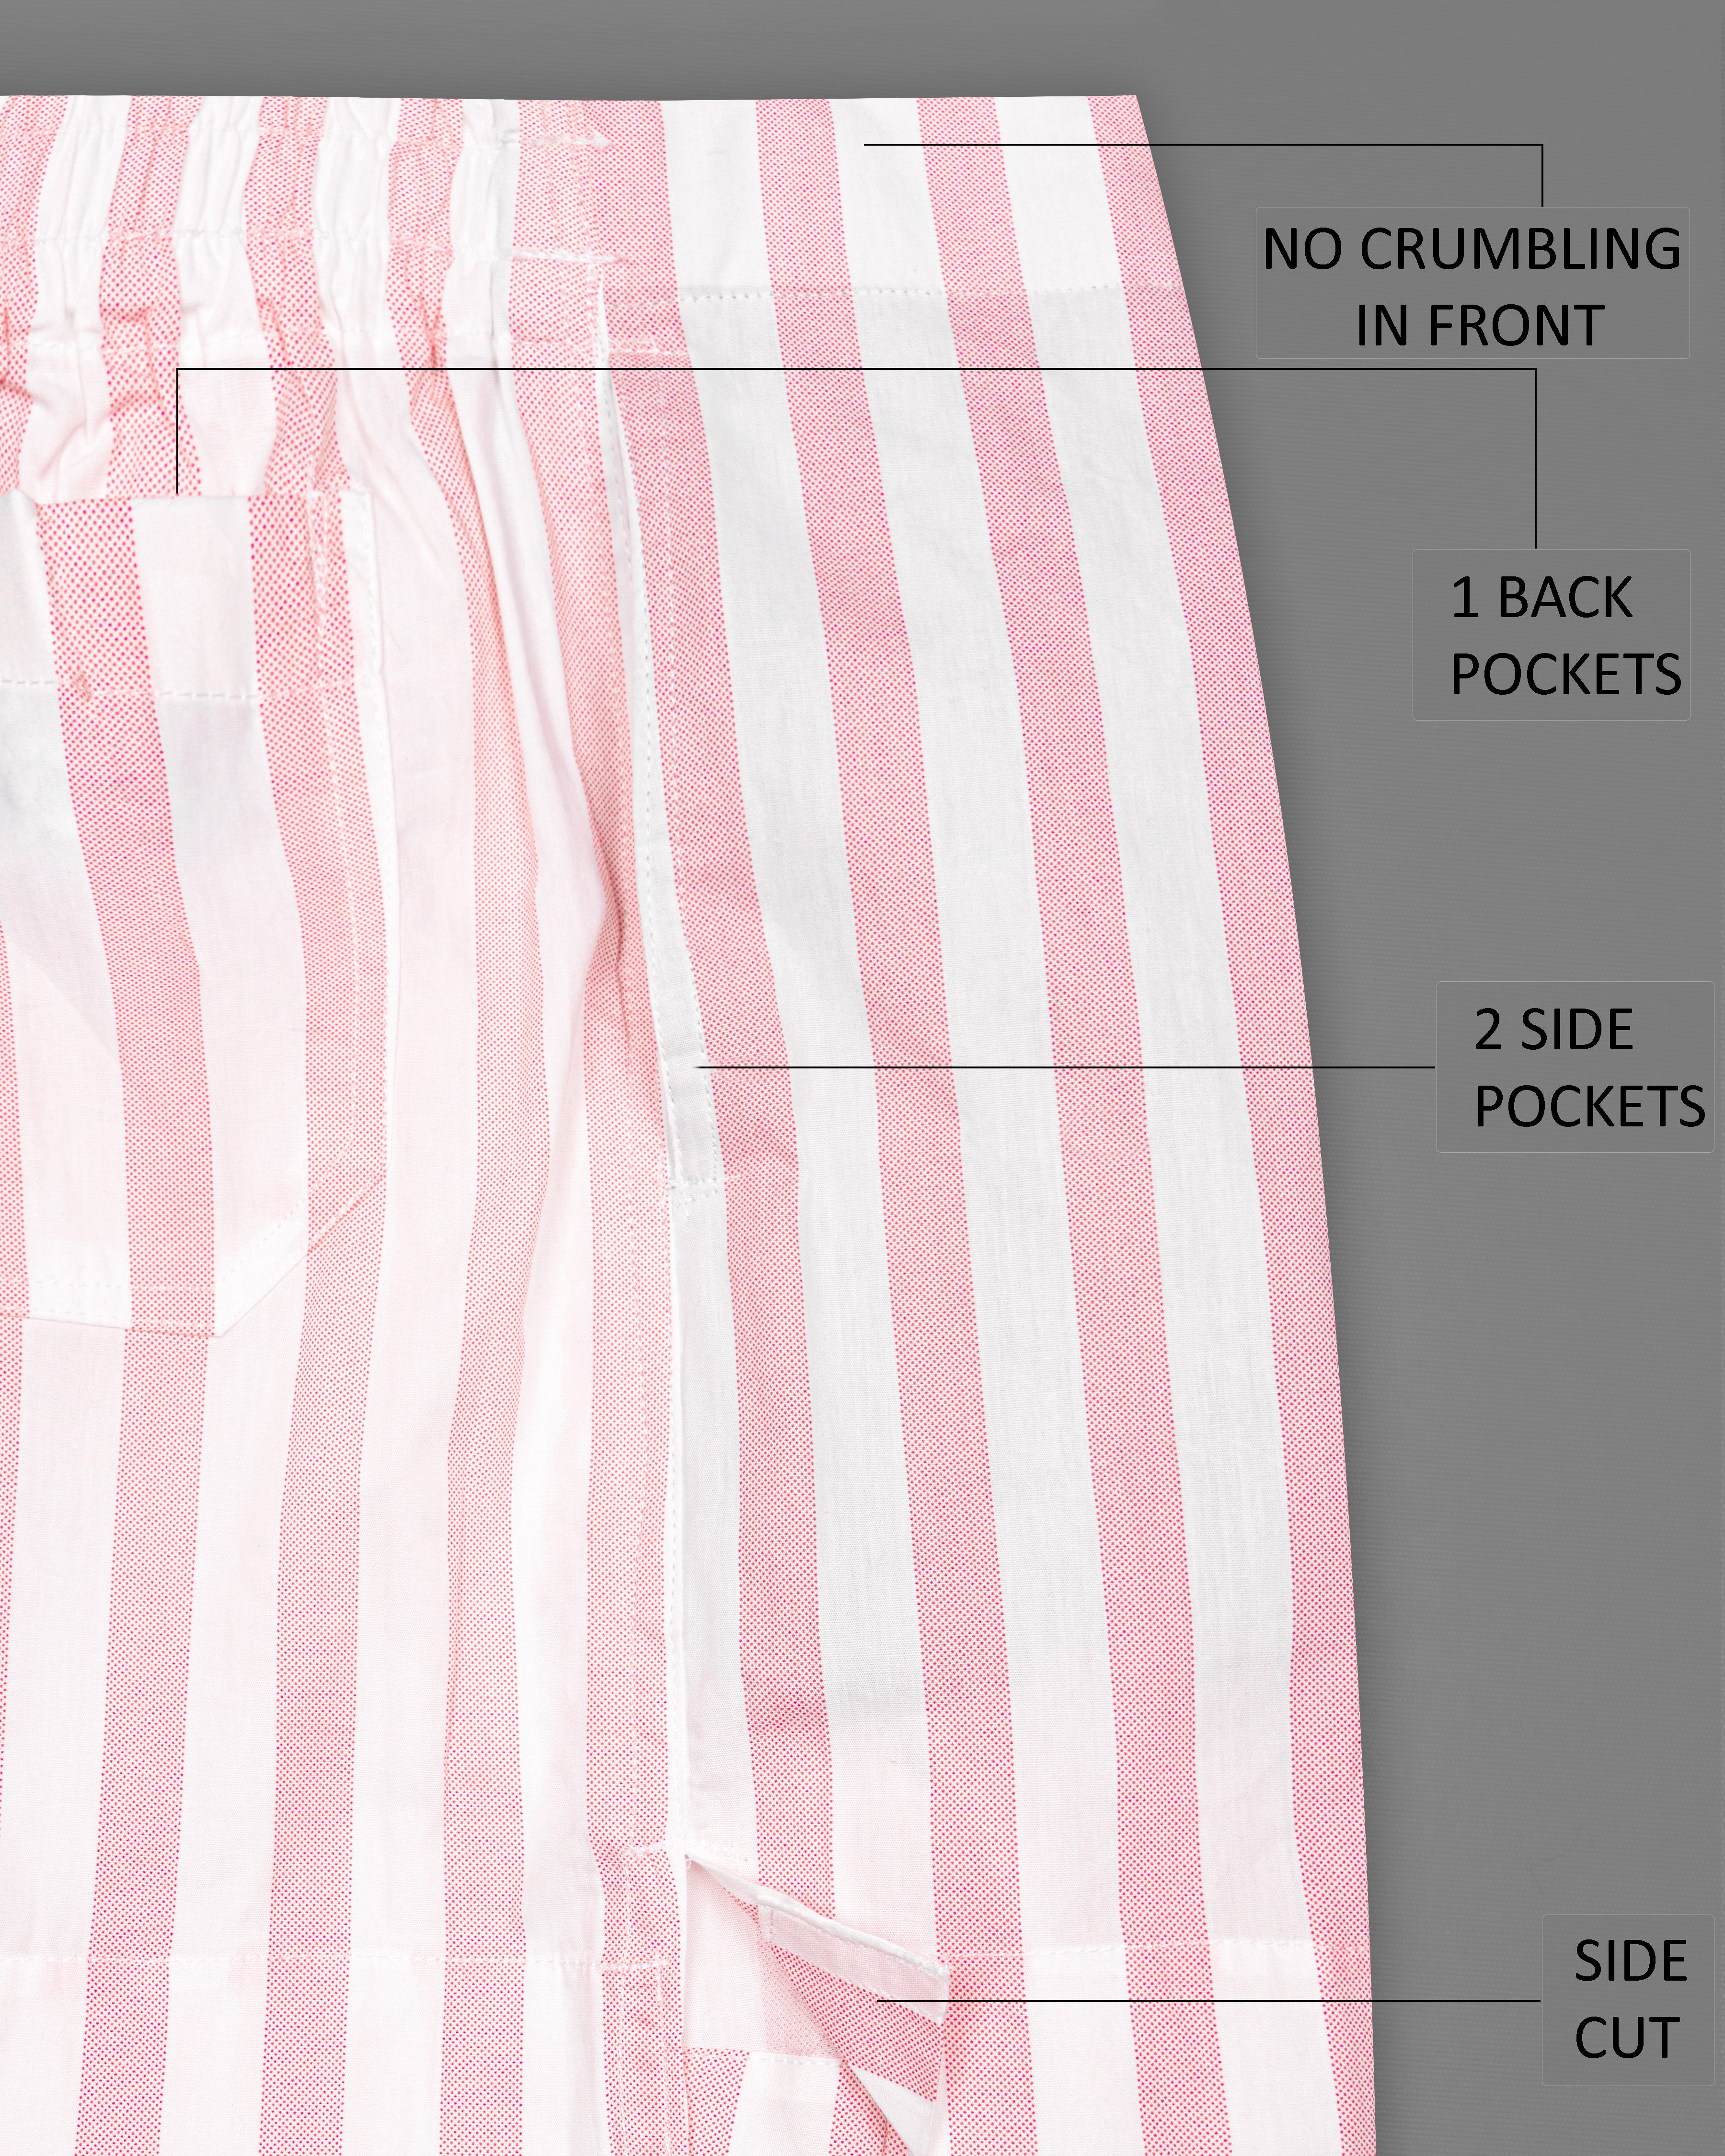 Azalea Pink with White Striped Premium Cotton Boxers BX462-28, BX462-30, BX462-32, BX462-34, BX462-36, BX462-38, BX462-40, BX462-42, BX462-44